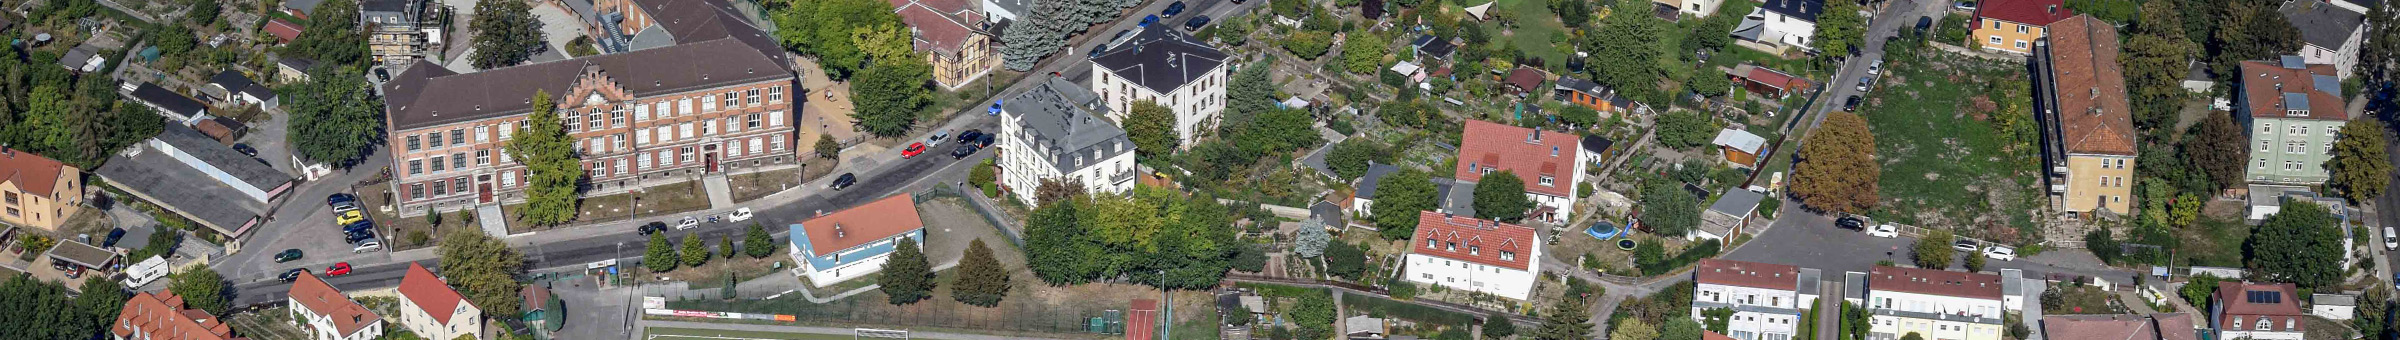 Auf einem Luftbild sind die Stadtteile Löbtau, Gorbitz, Cotta und Briesnitz zu sehen. Am unteren Bildrand verläuft die Kesselsdorfer Straße. Im Mittelgrund sind Hochhausblöcke zu sehen. Den Abschluss bildet am oberen Bildrand die Elbe.